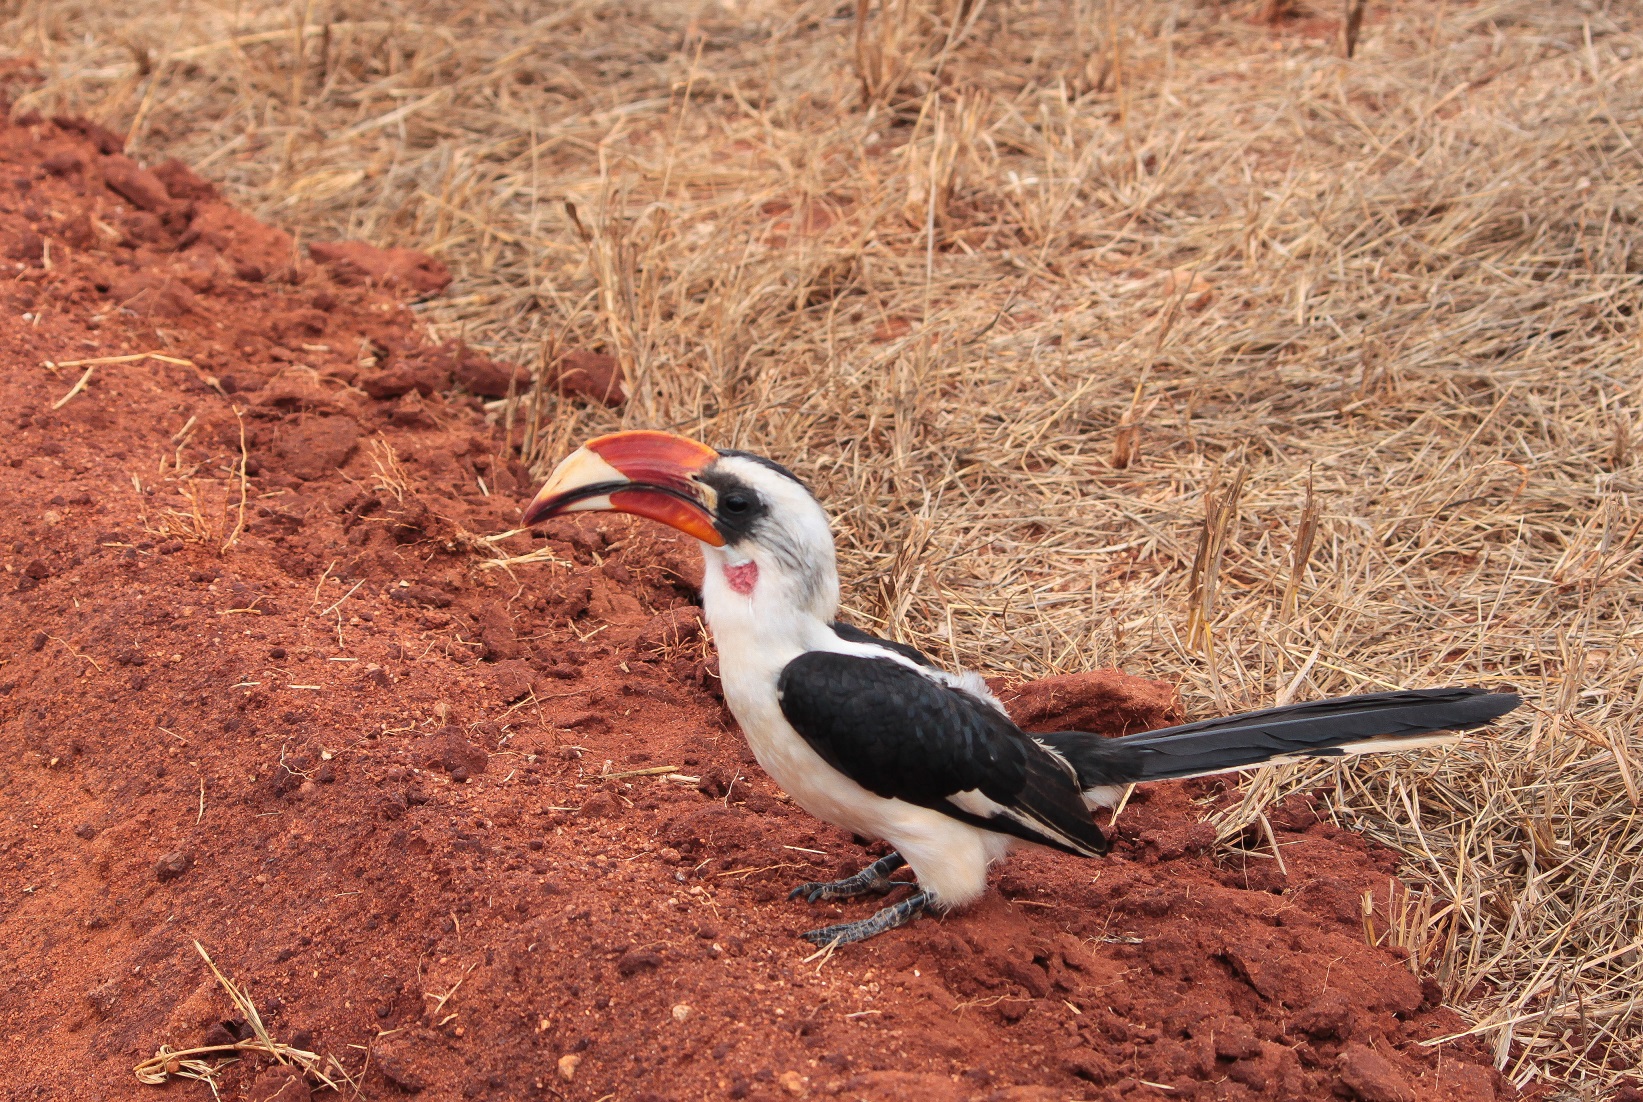 Red-billed hornbill...